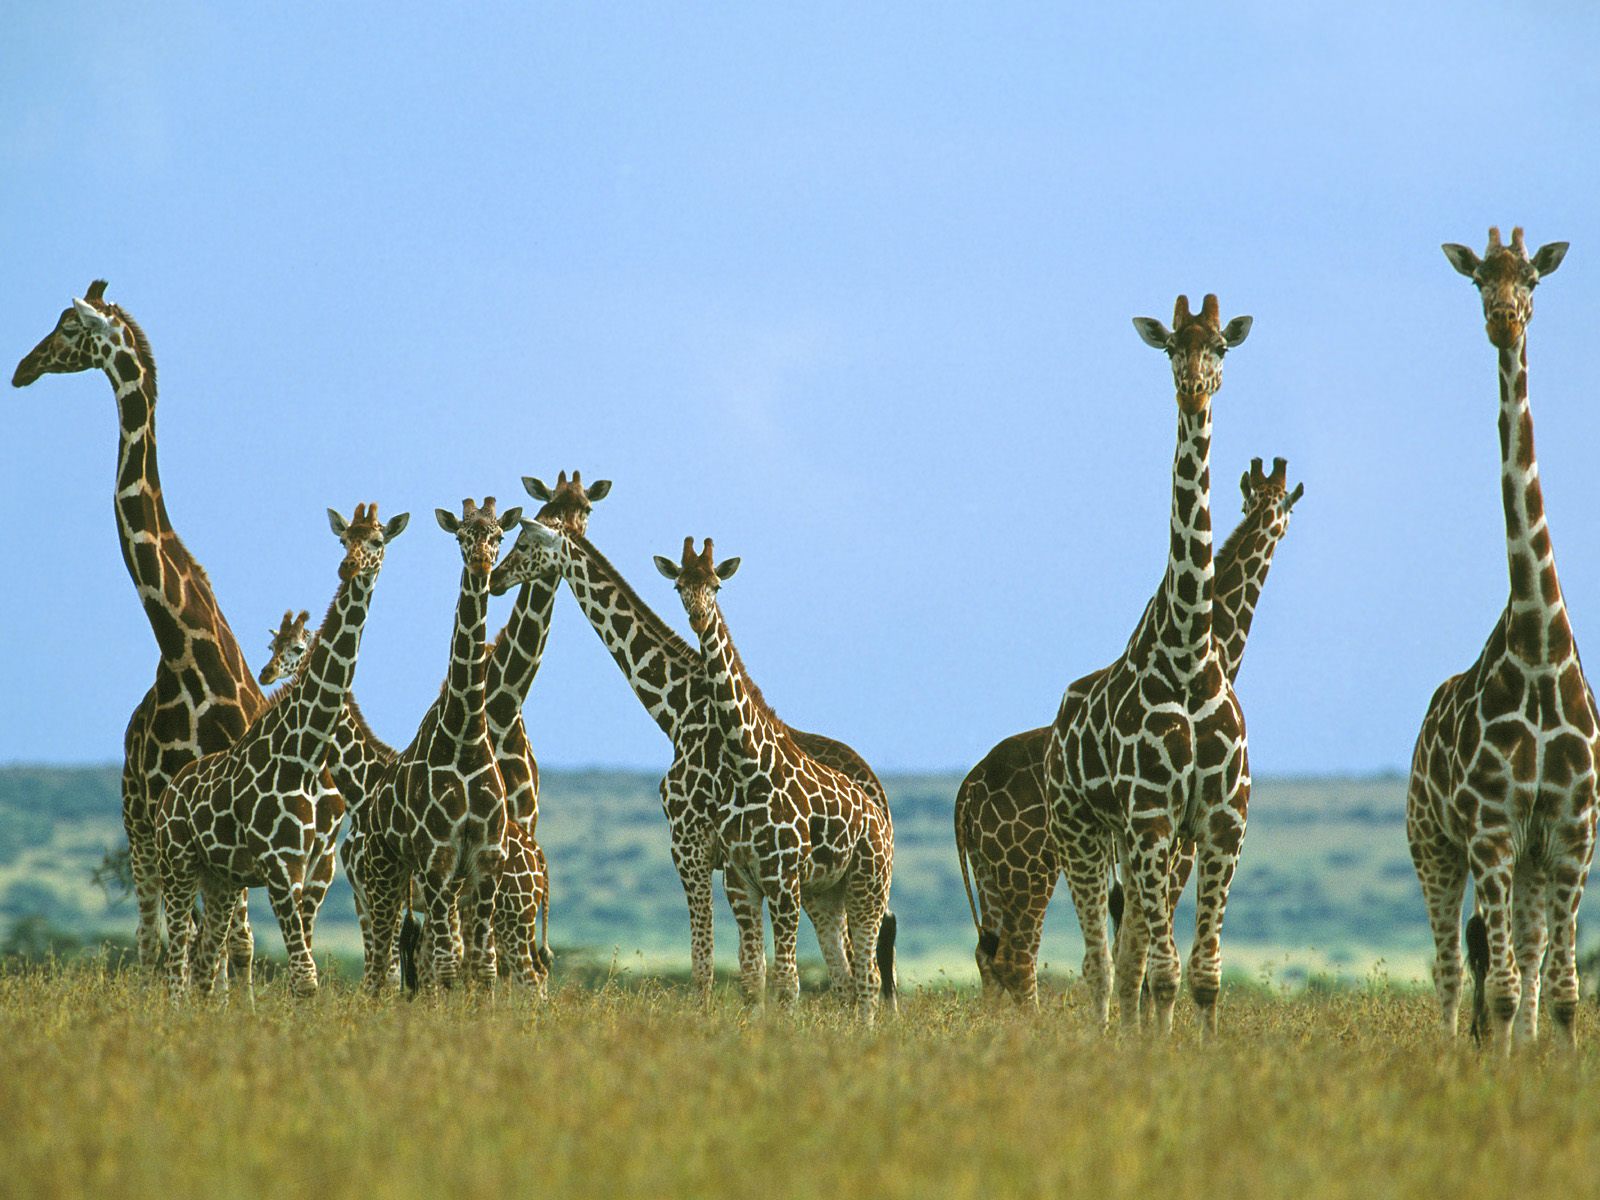 Giraffe Herd In Field Kenya Africa - Many Giraffes , HD Wallpaper & Backgrounds